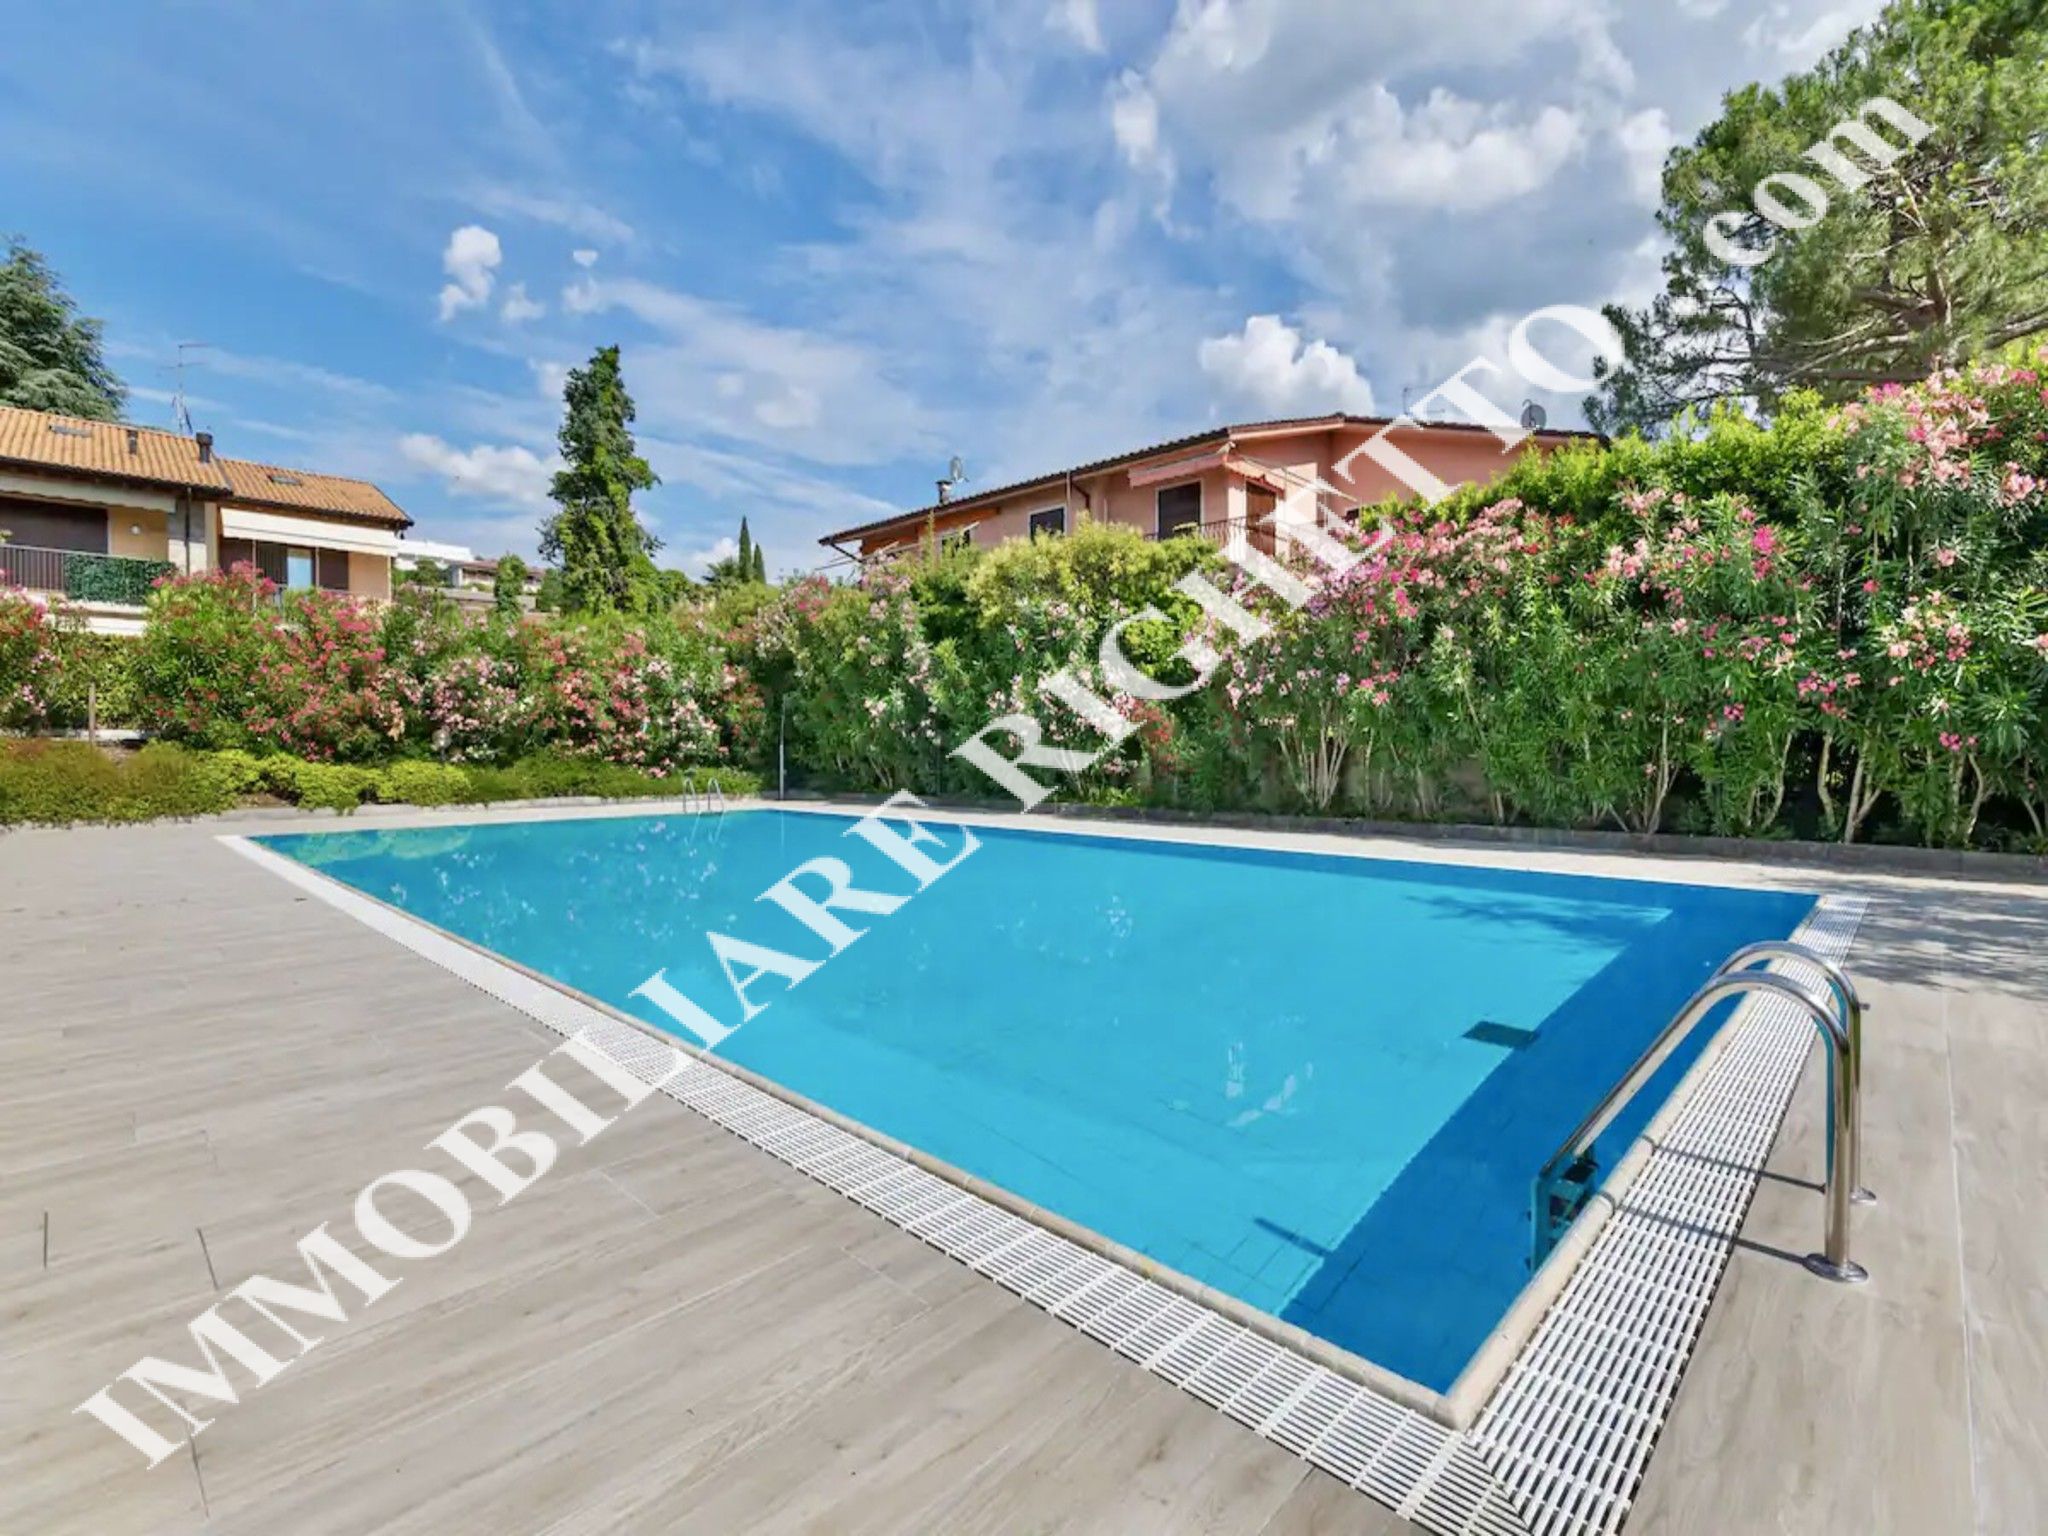 Immobilien zum Verkauf anbieten Schöne, geräumige Wohnung mit Schwimmbad.